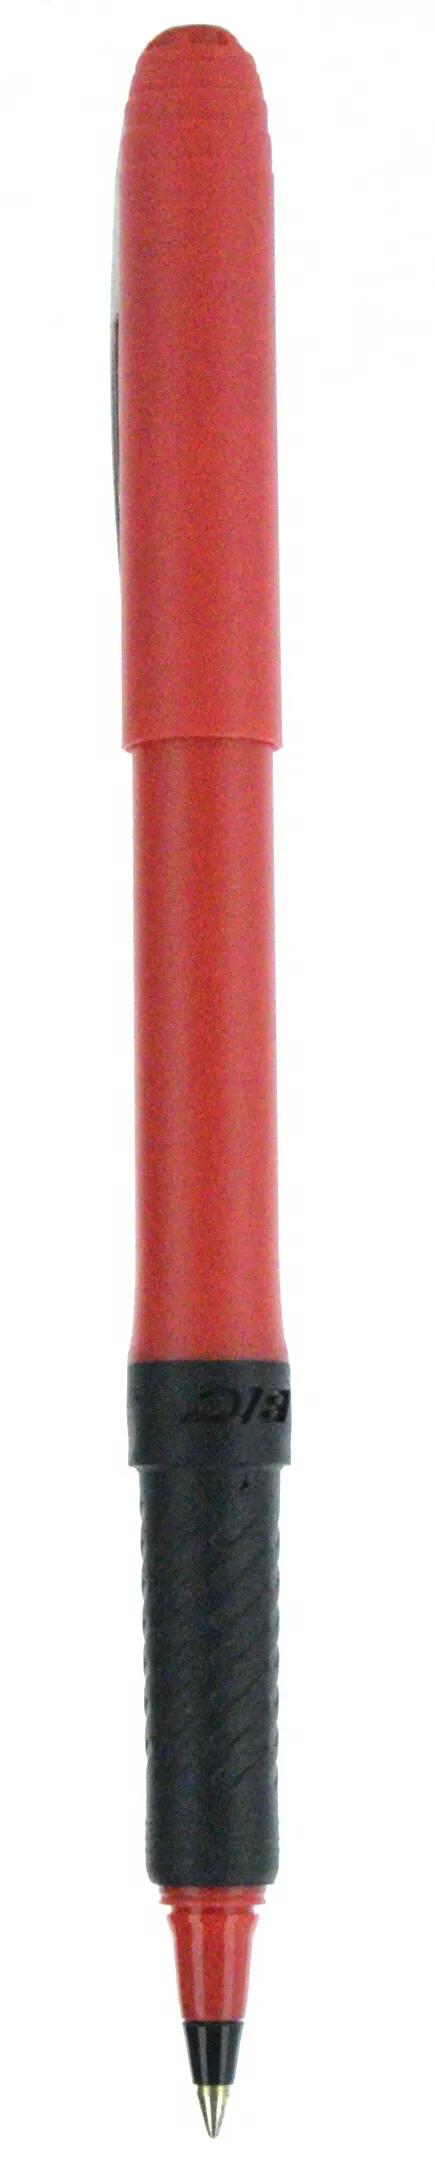 BIC® Grip Roller Pen 88 of 147